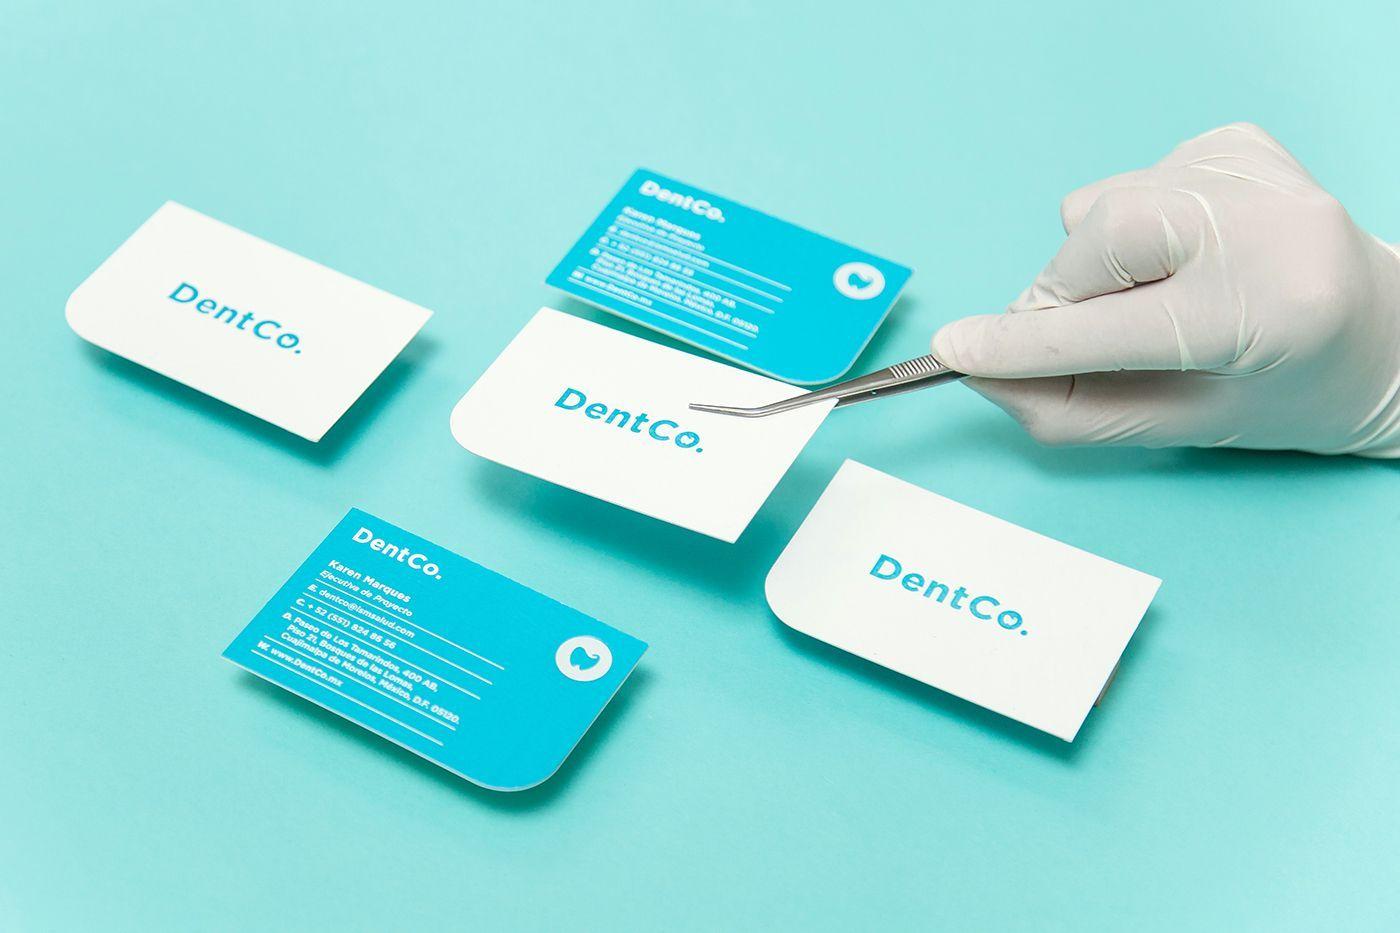 Armar Logo - DentCo es una empresa de financiamiento a odontólogos recién